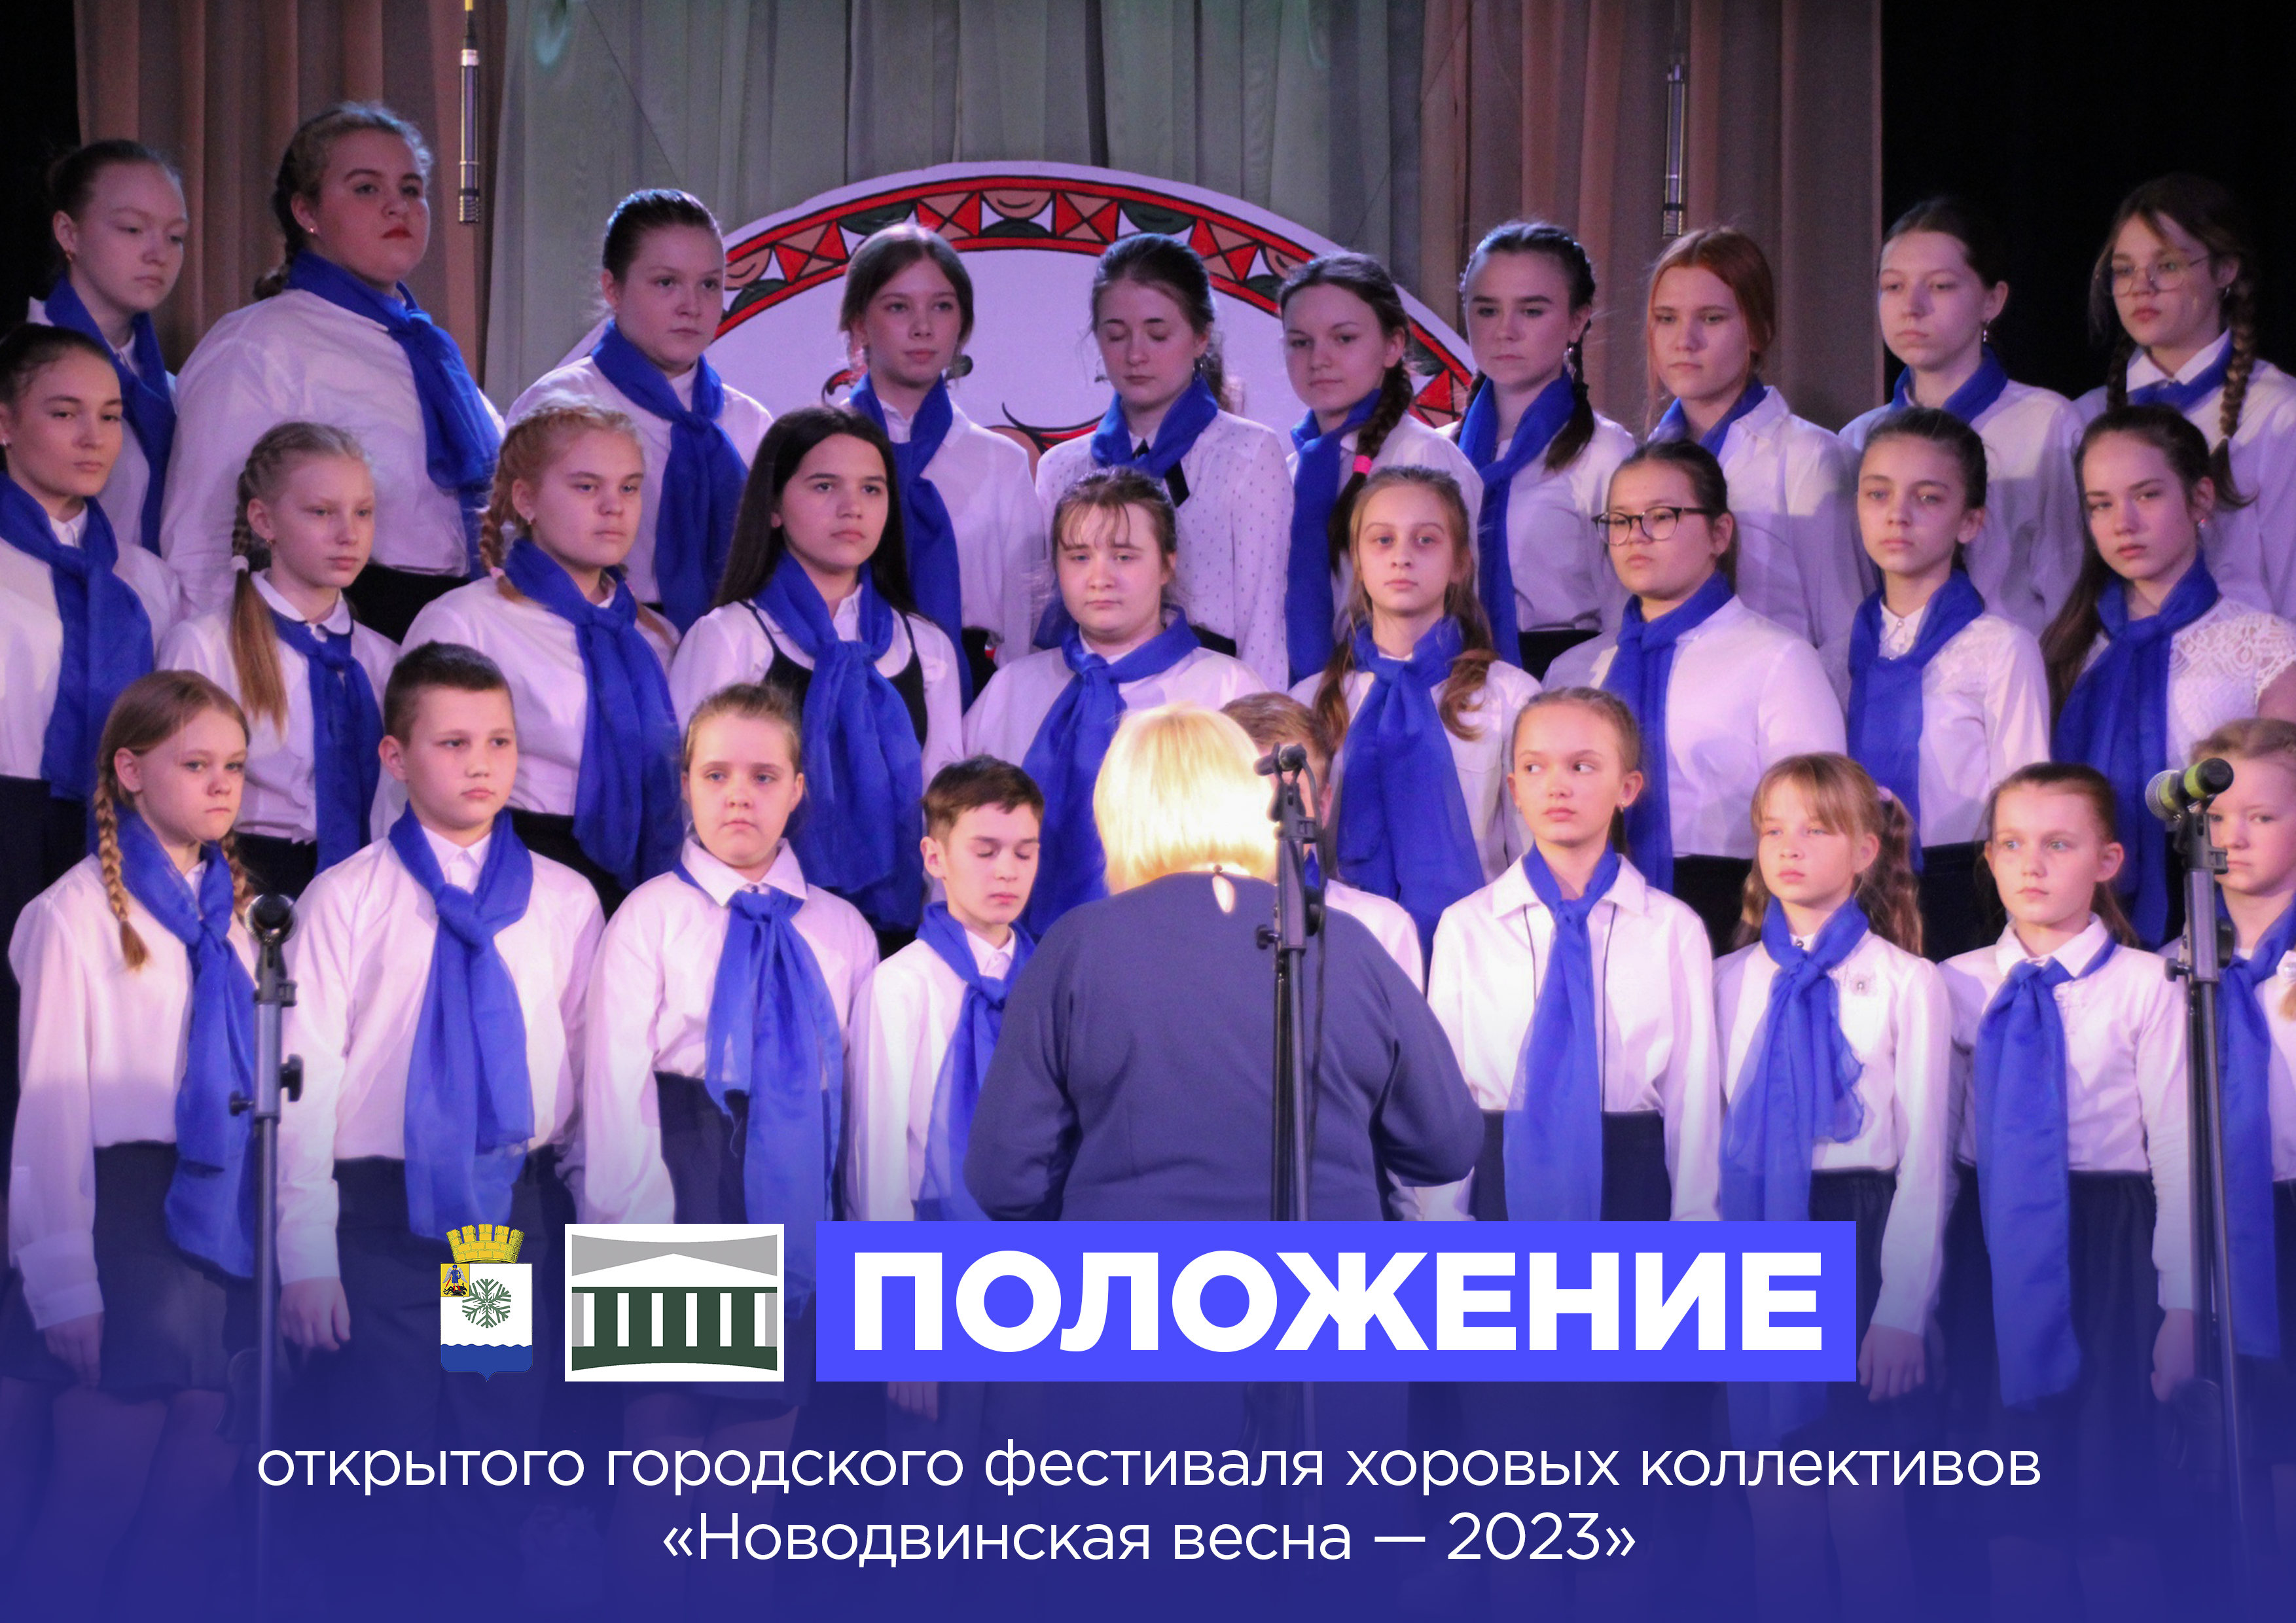 Новодвинский городской культурный центр объявляет о старте приёма заявок на открытый городской фестиваль хоровых коллективов «Новодвинская весна — 2023».